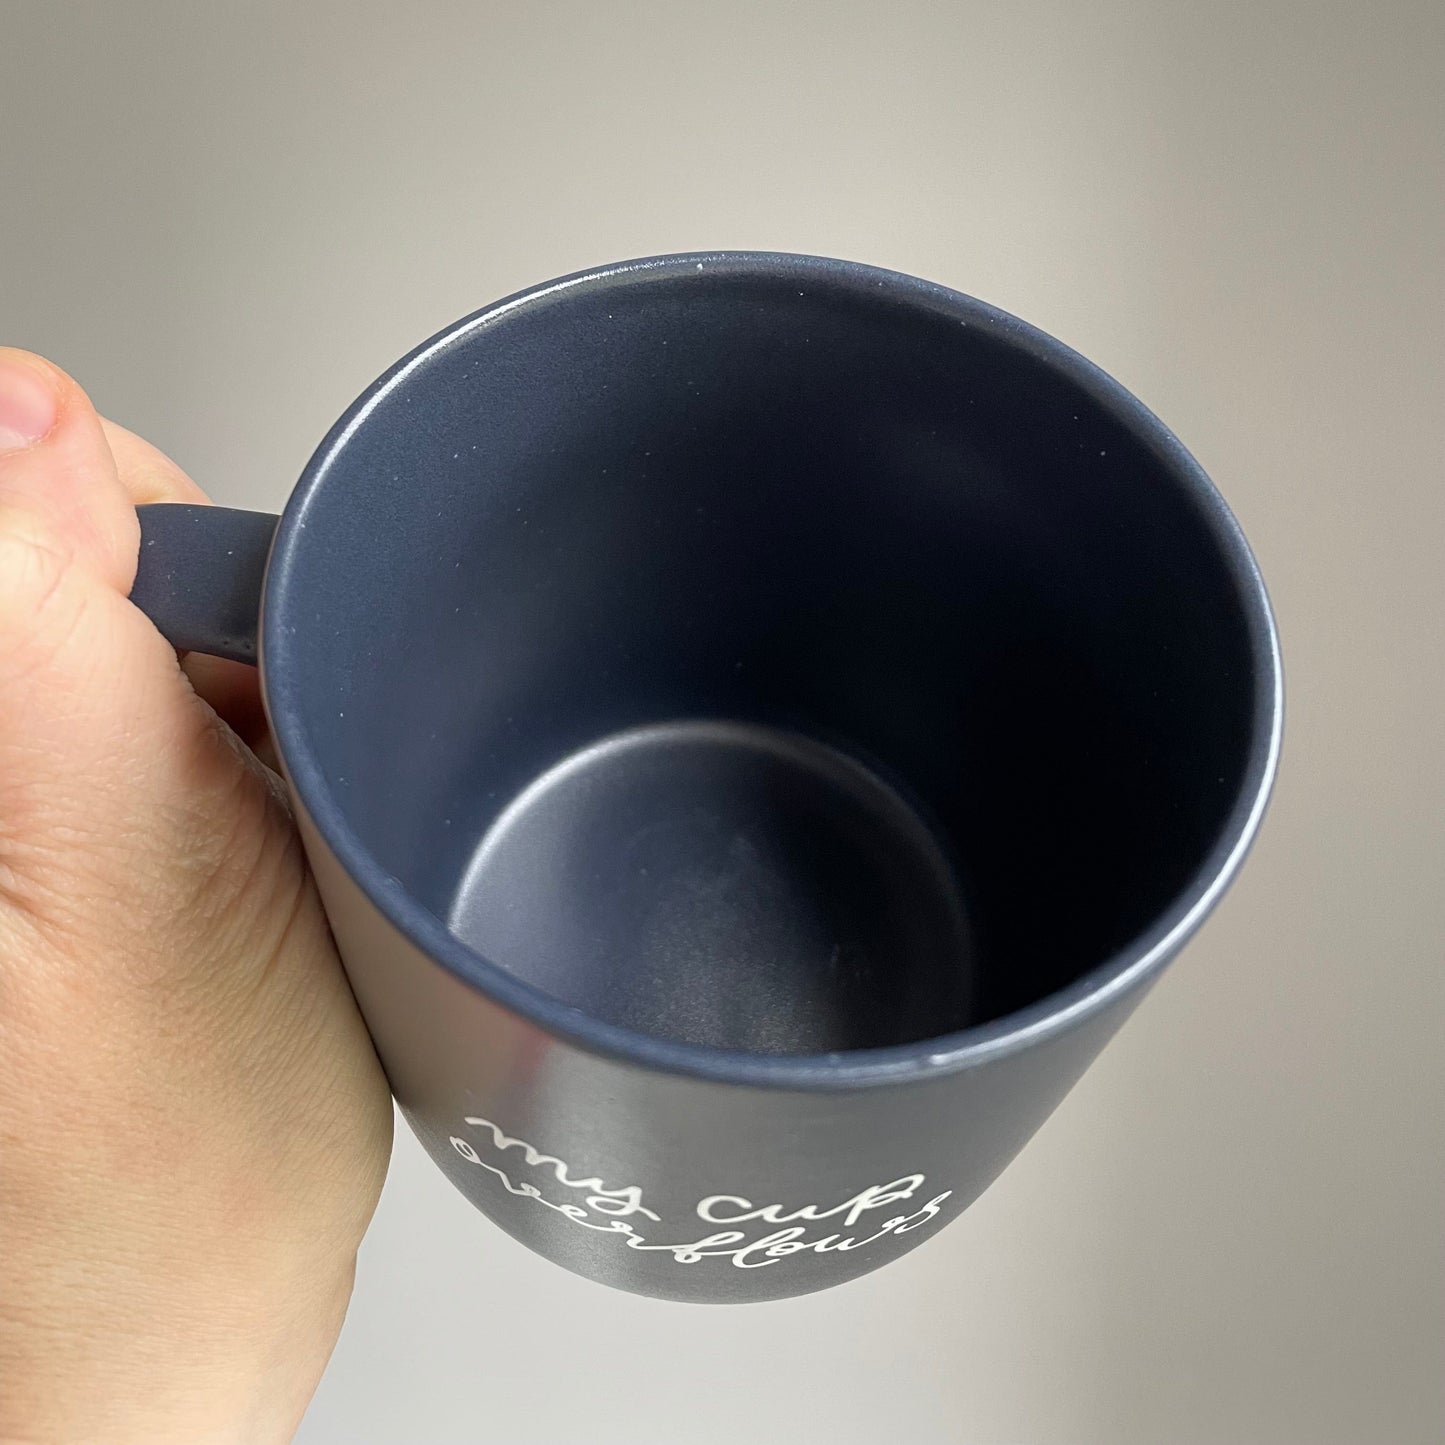 Christian mug - my cup overflows Mug And Hope Designs   